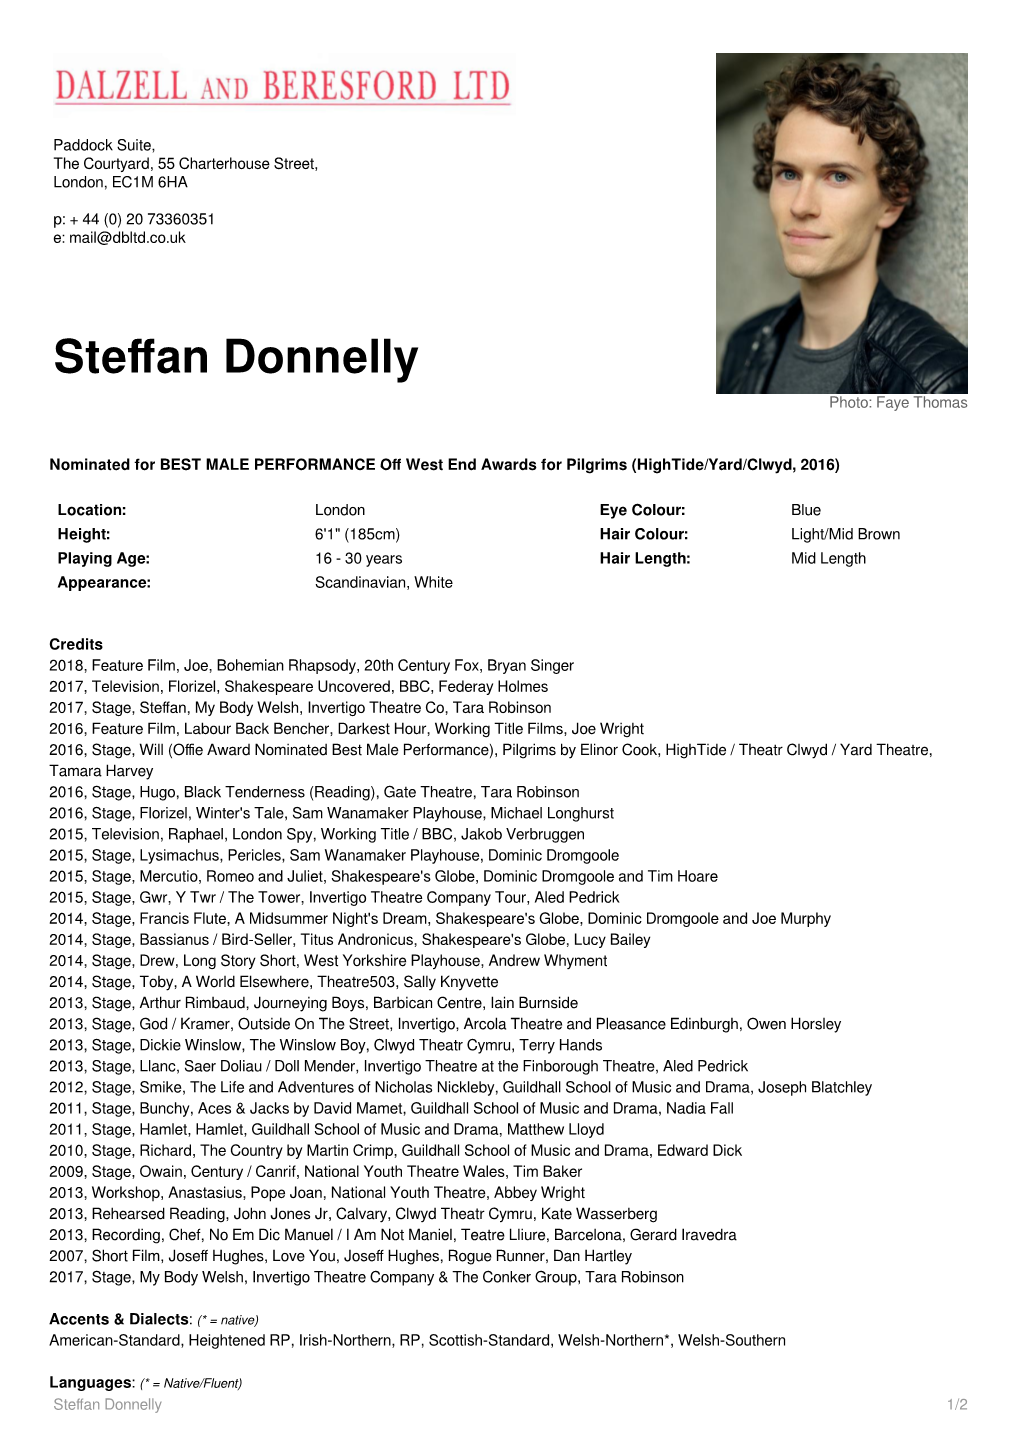 Steffan Donnelly